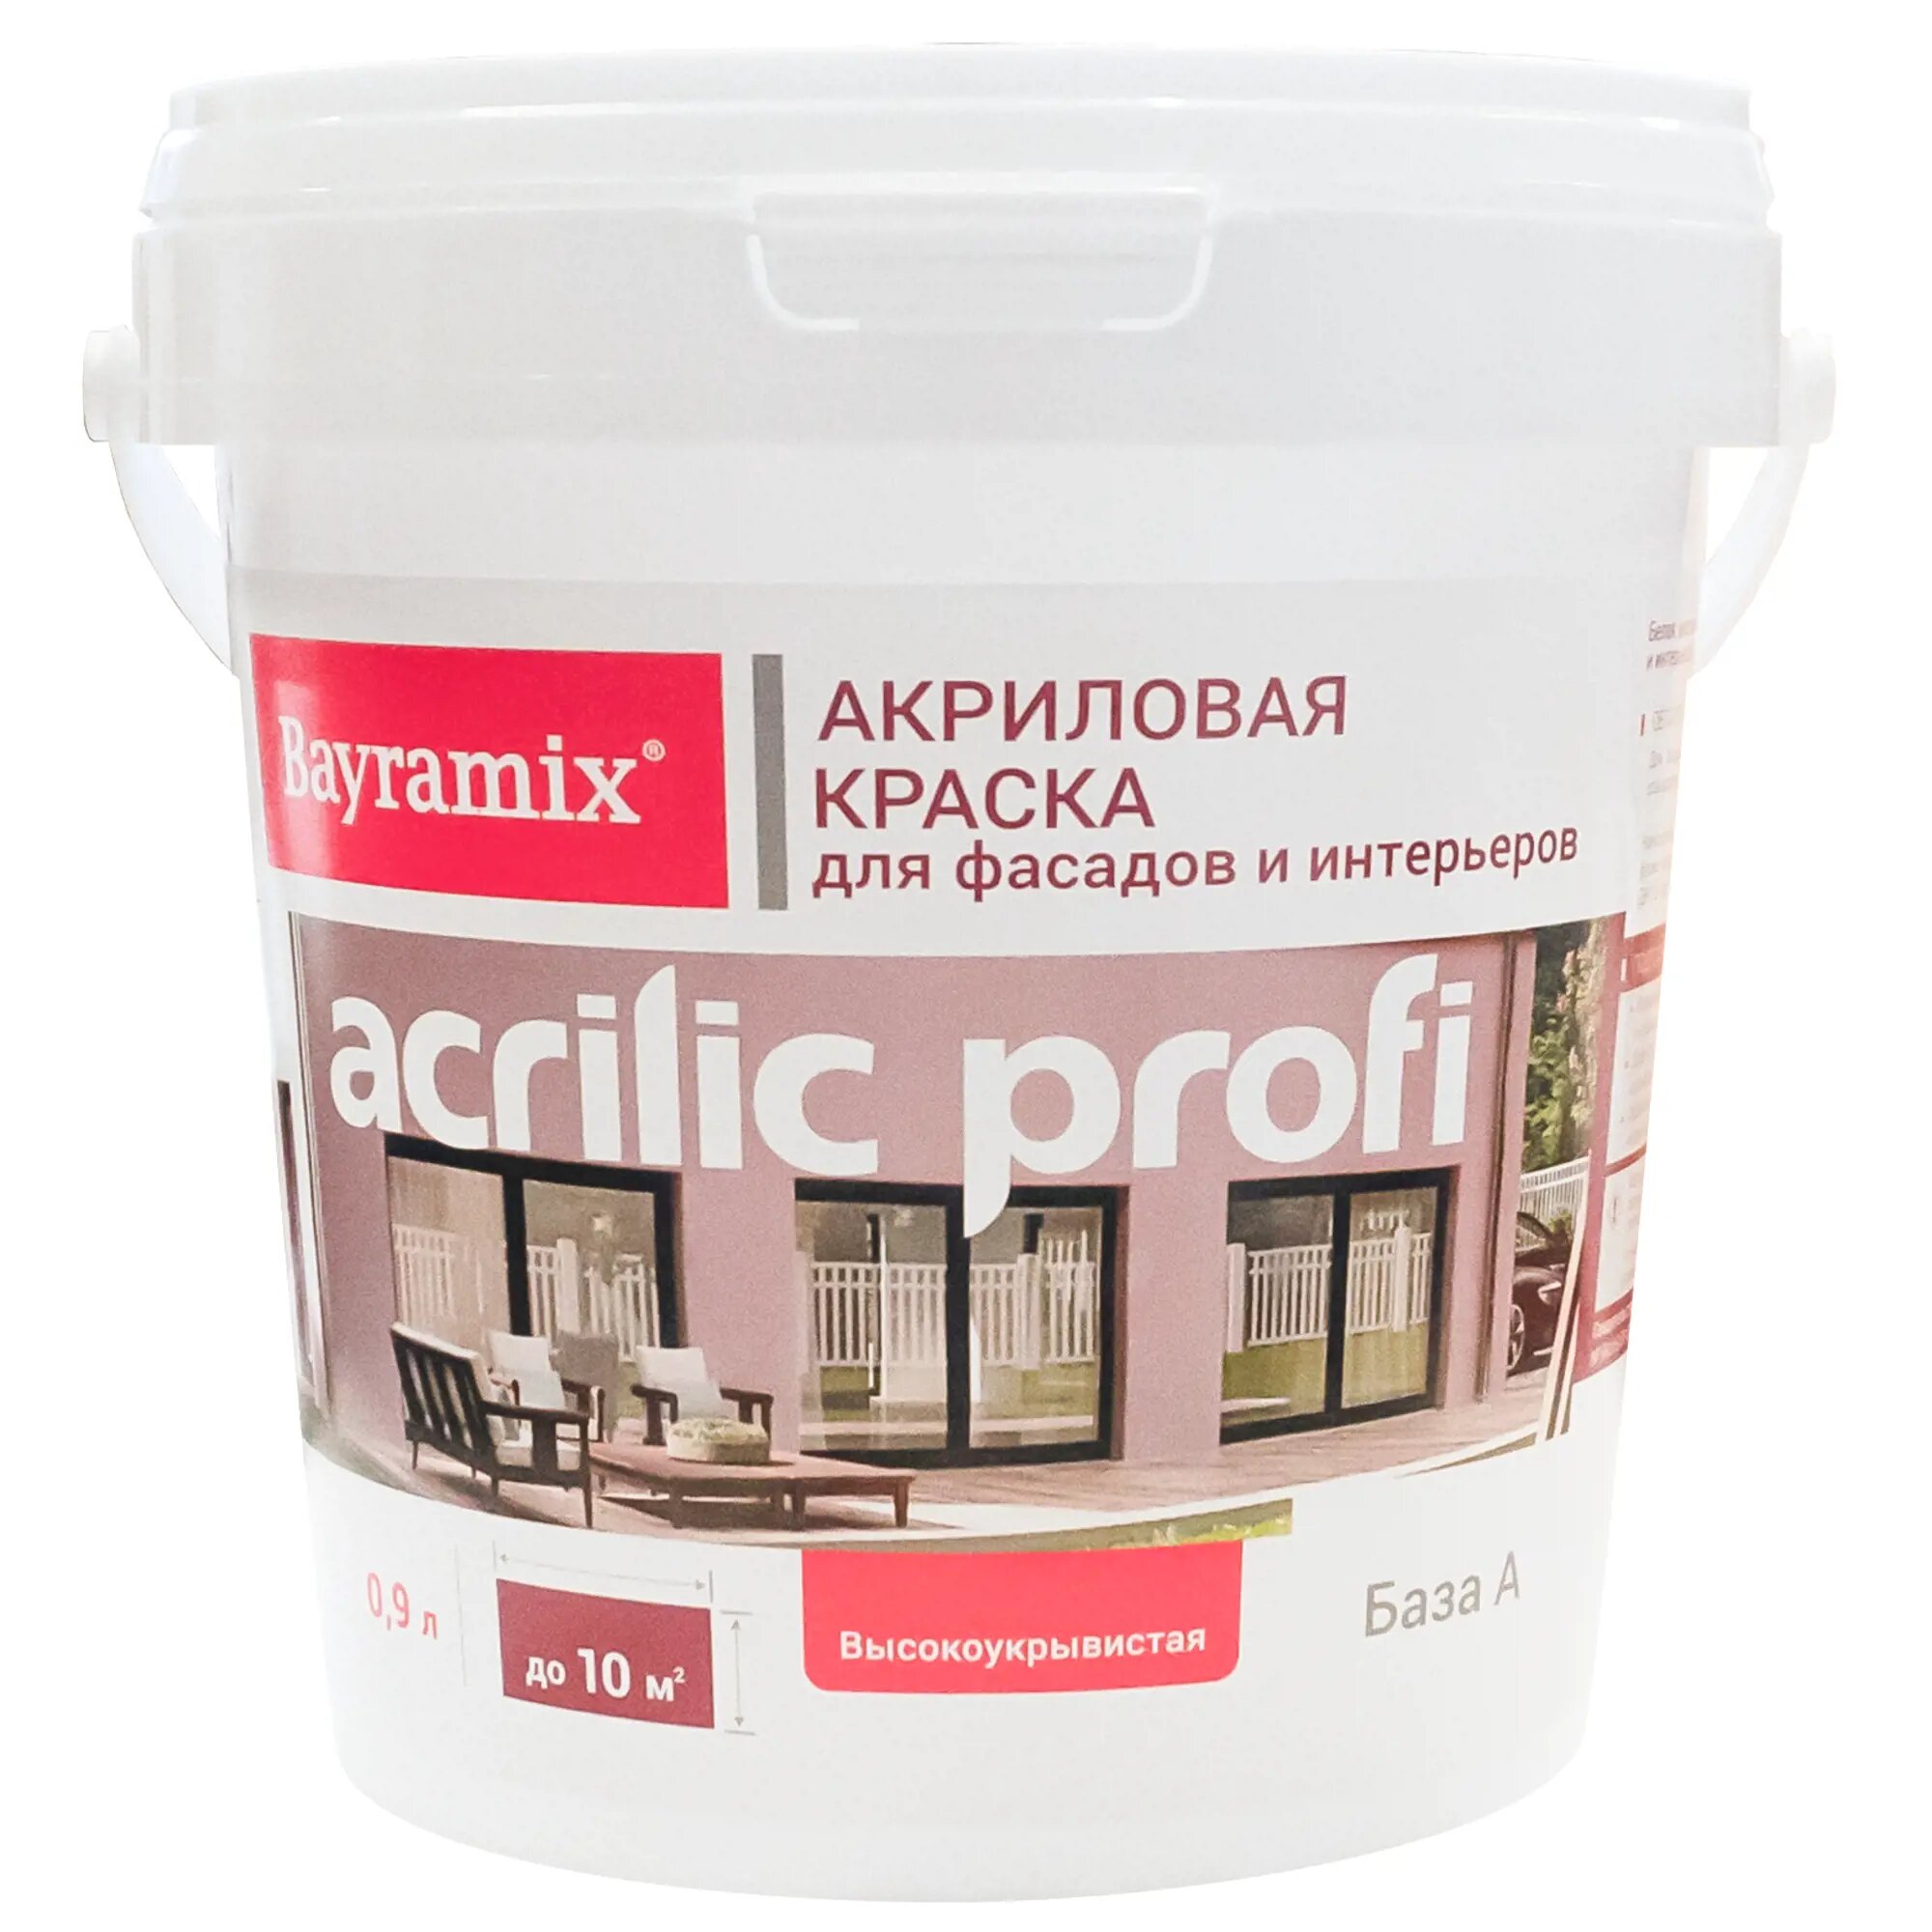 Краска для фасадов и интерьеров Bayramix Acrylic Profi база А 0.9 л